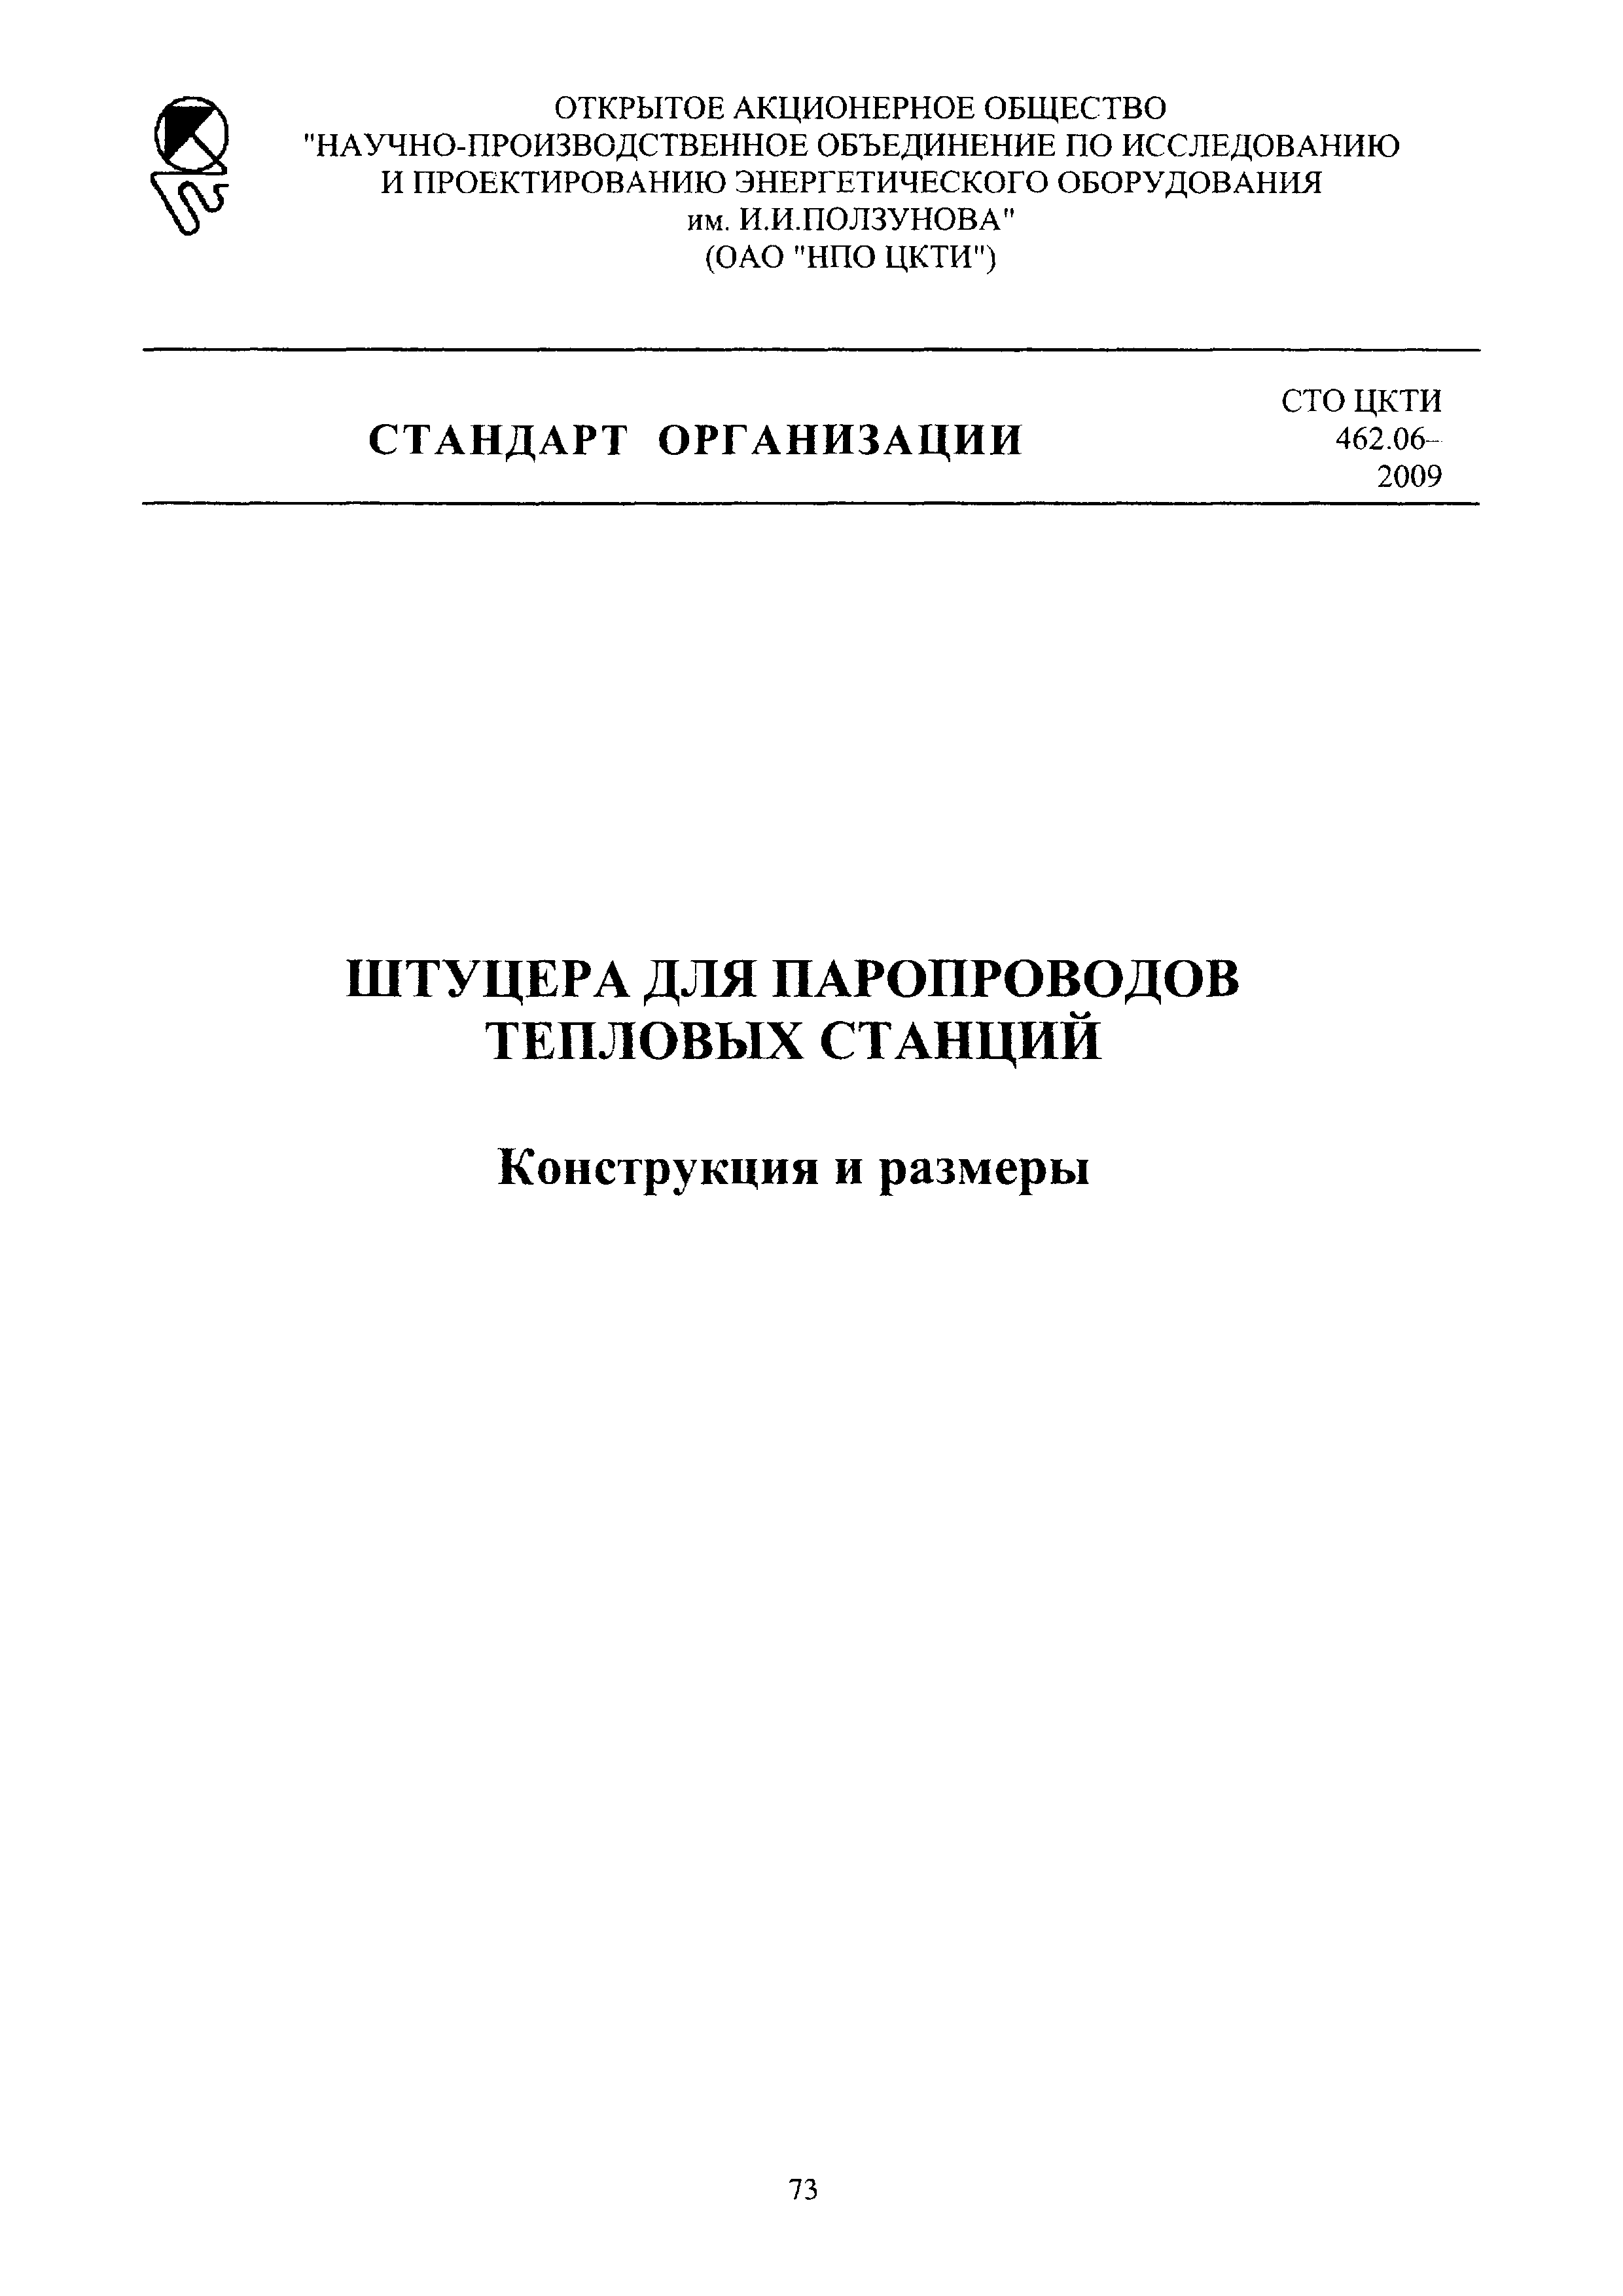 СТО ЦКТИ 462.06-2009